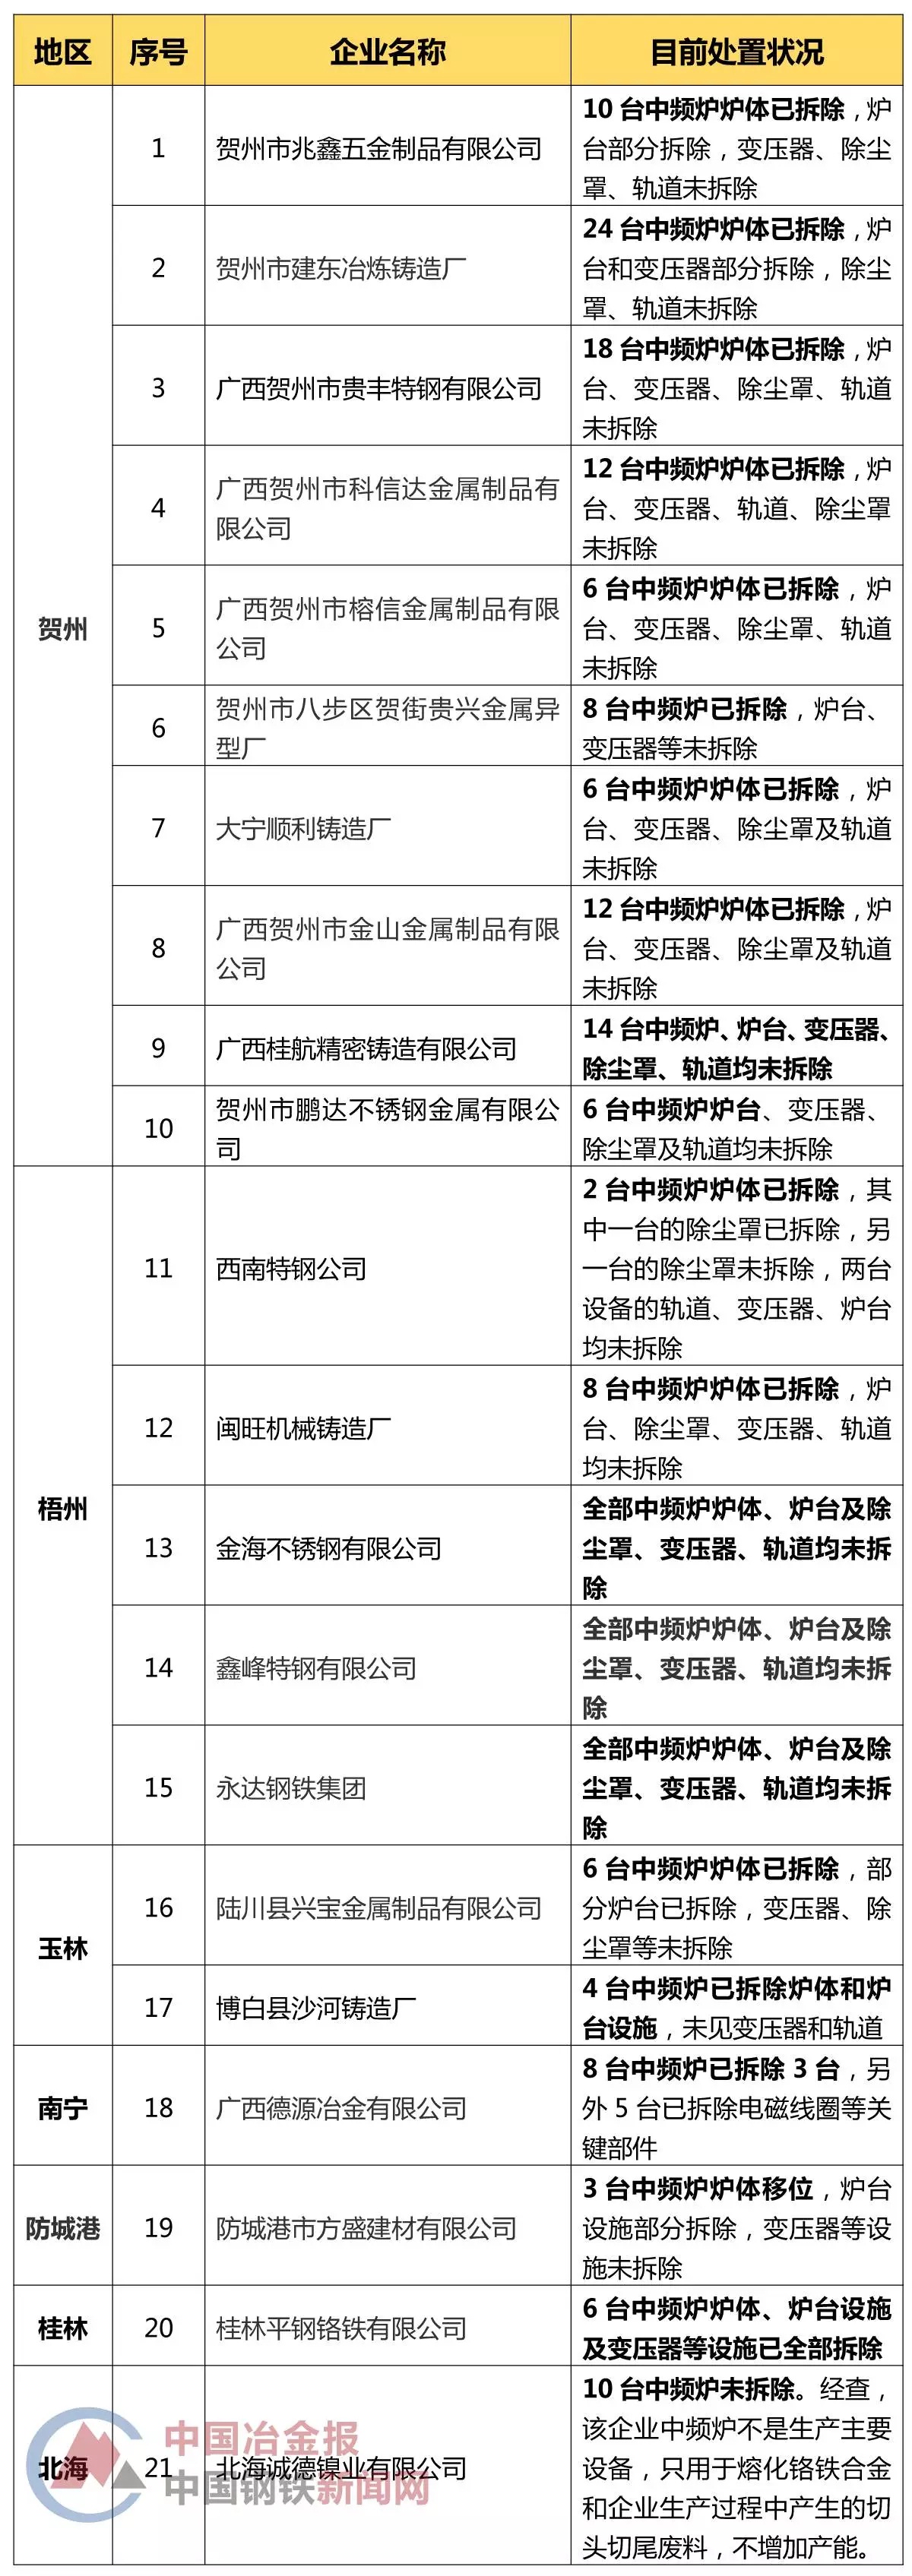 广西公布21家涉嫌生产地条钢企业名单(附150余台中频炉处置情况)